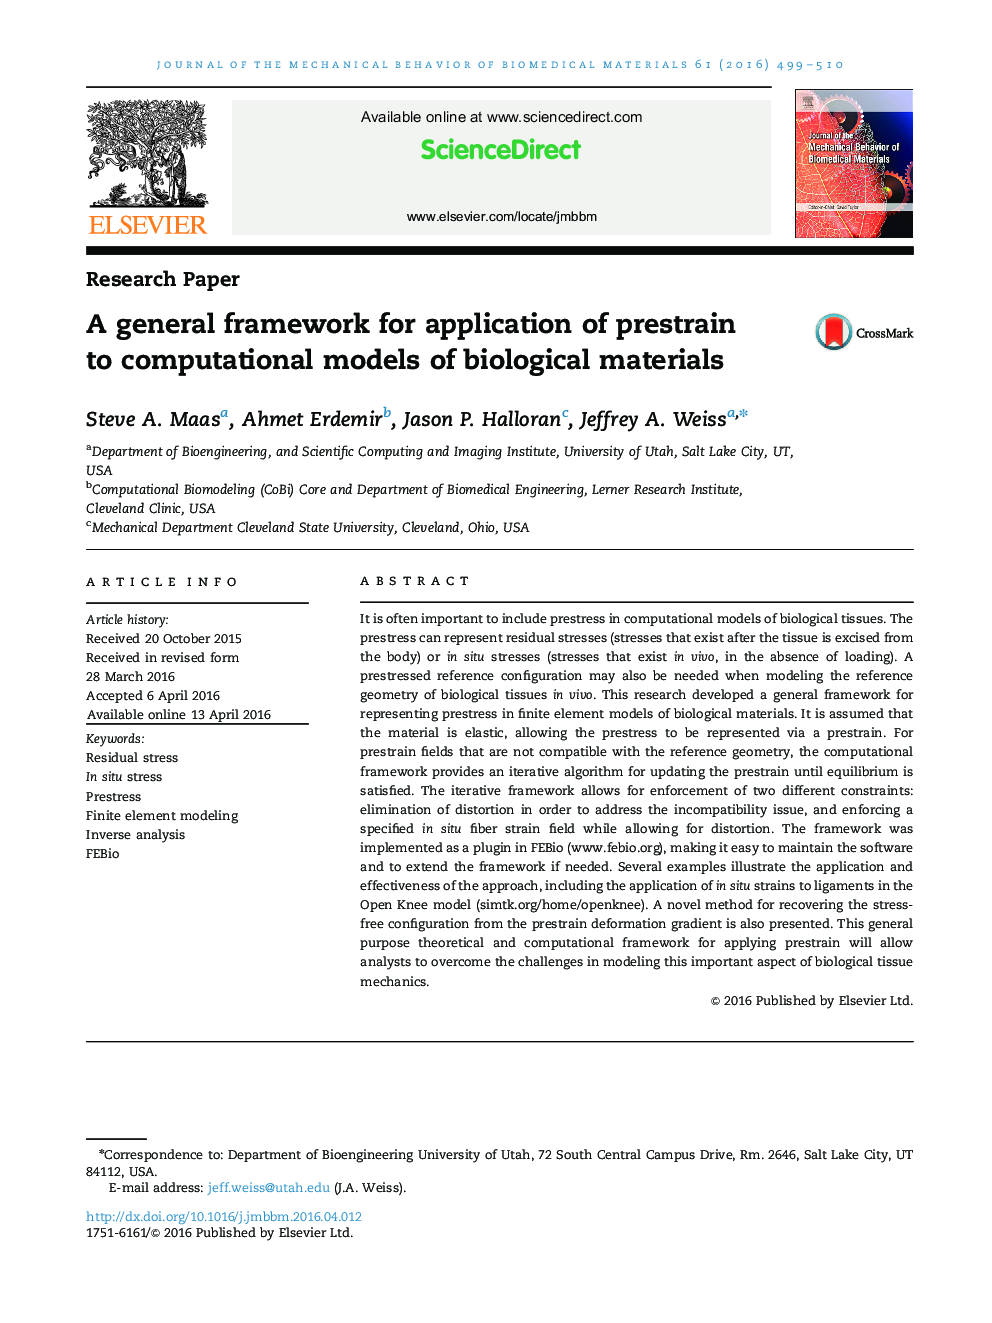 یک چارچوب کلی برای کاربرد پیش رانندگی به مدل های محاسباتی مواد بیولوژیکی 